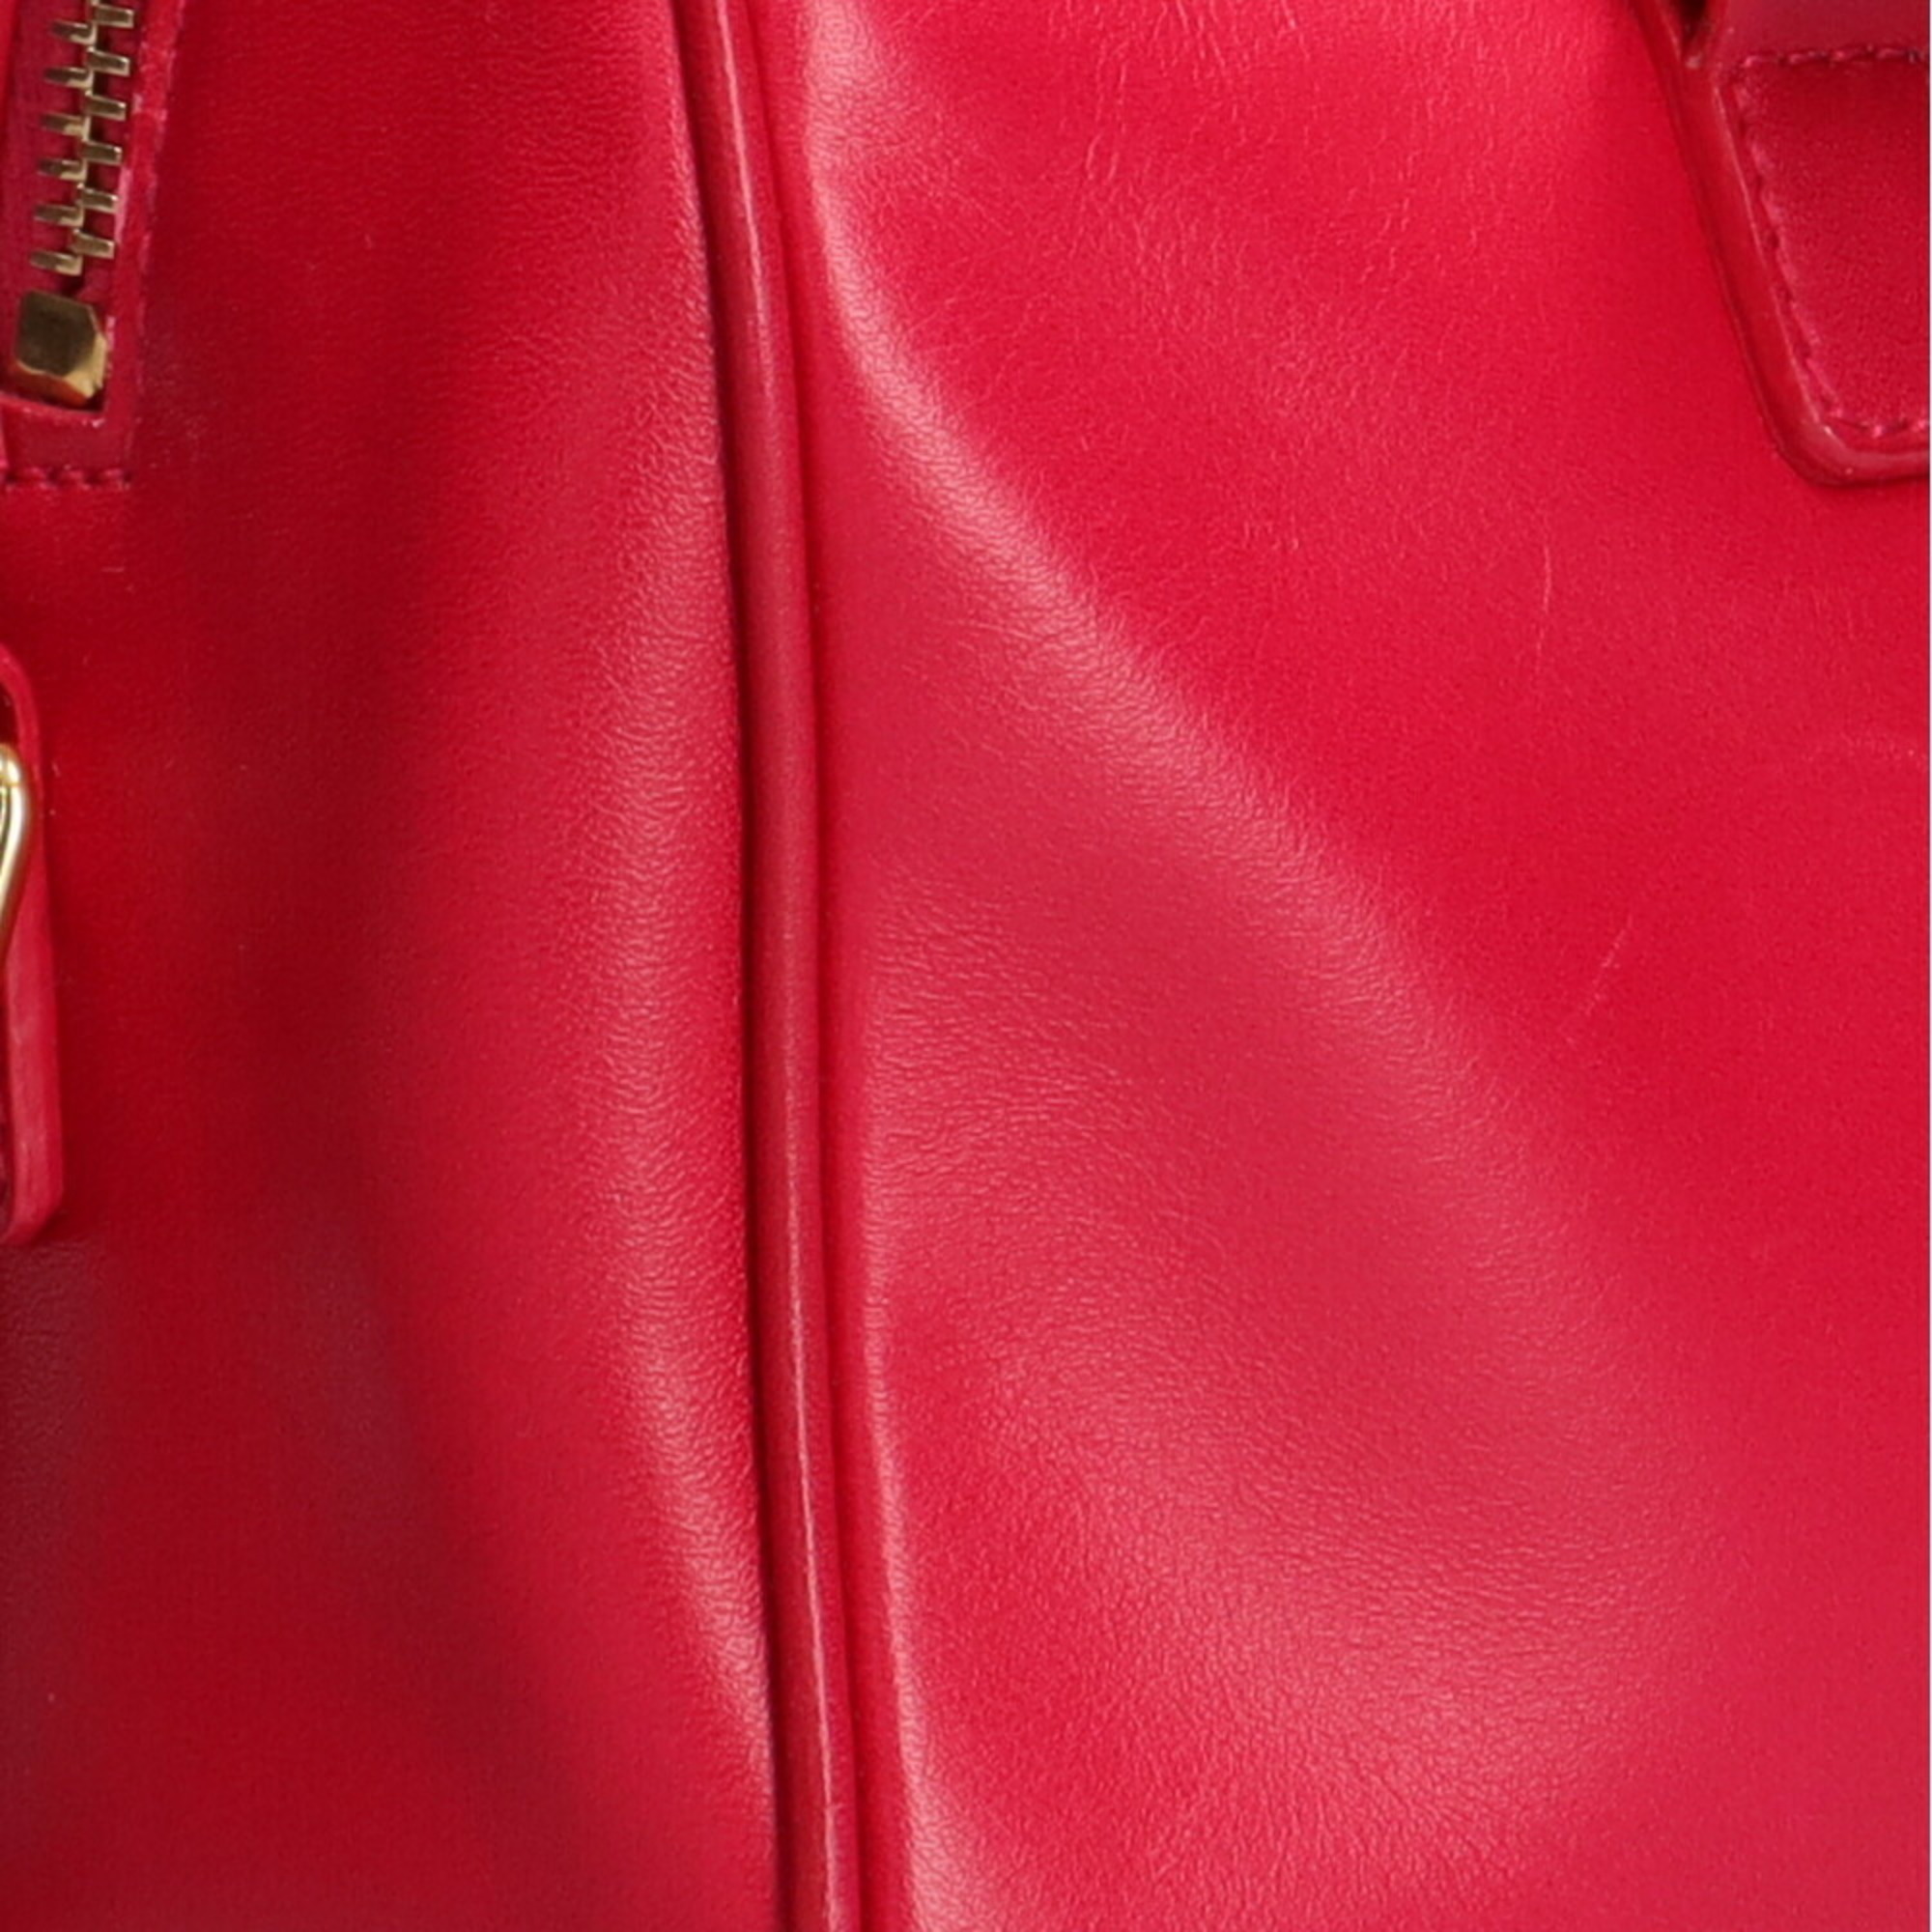 Yves Saint Laurent Saint Laurent Paris SAINT LAURENT PARIS Baby Duffle Shoulder Bag Leather Red Ladies